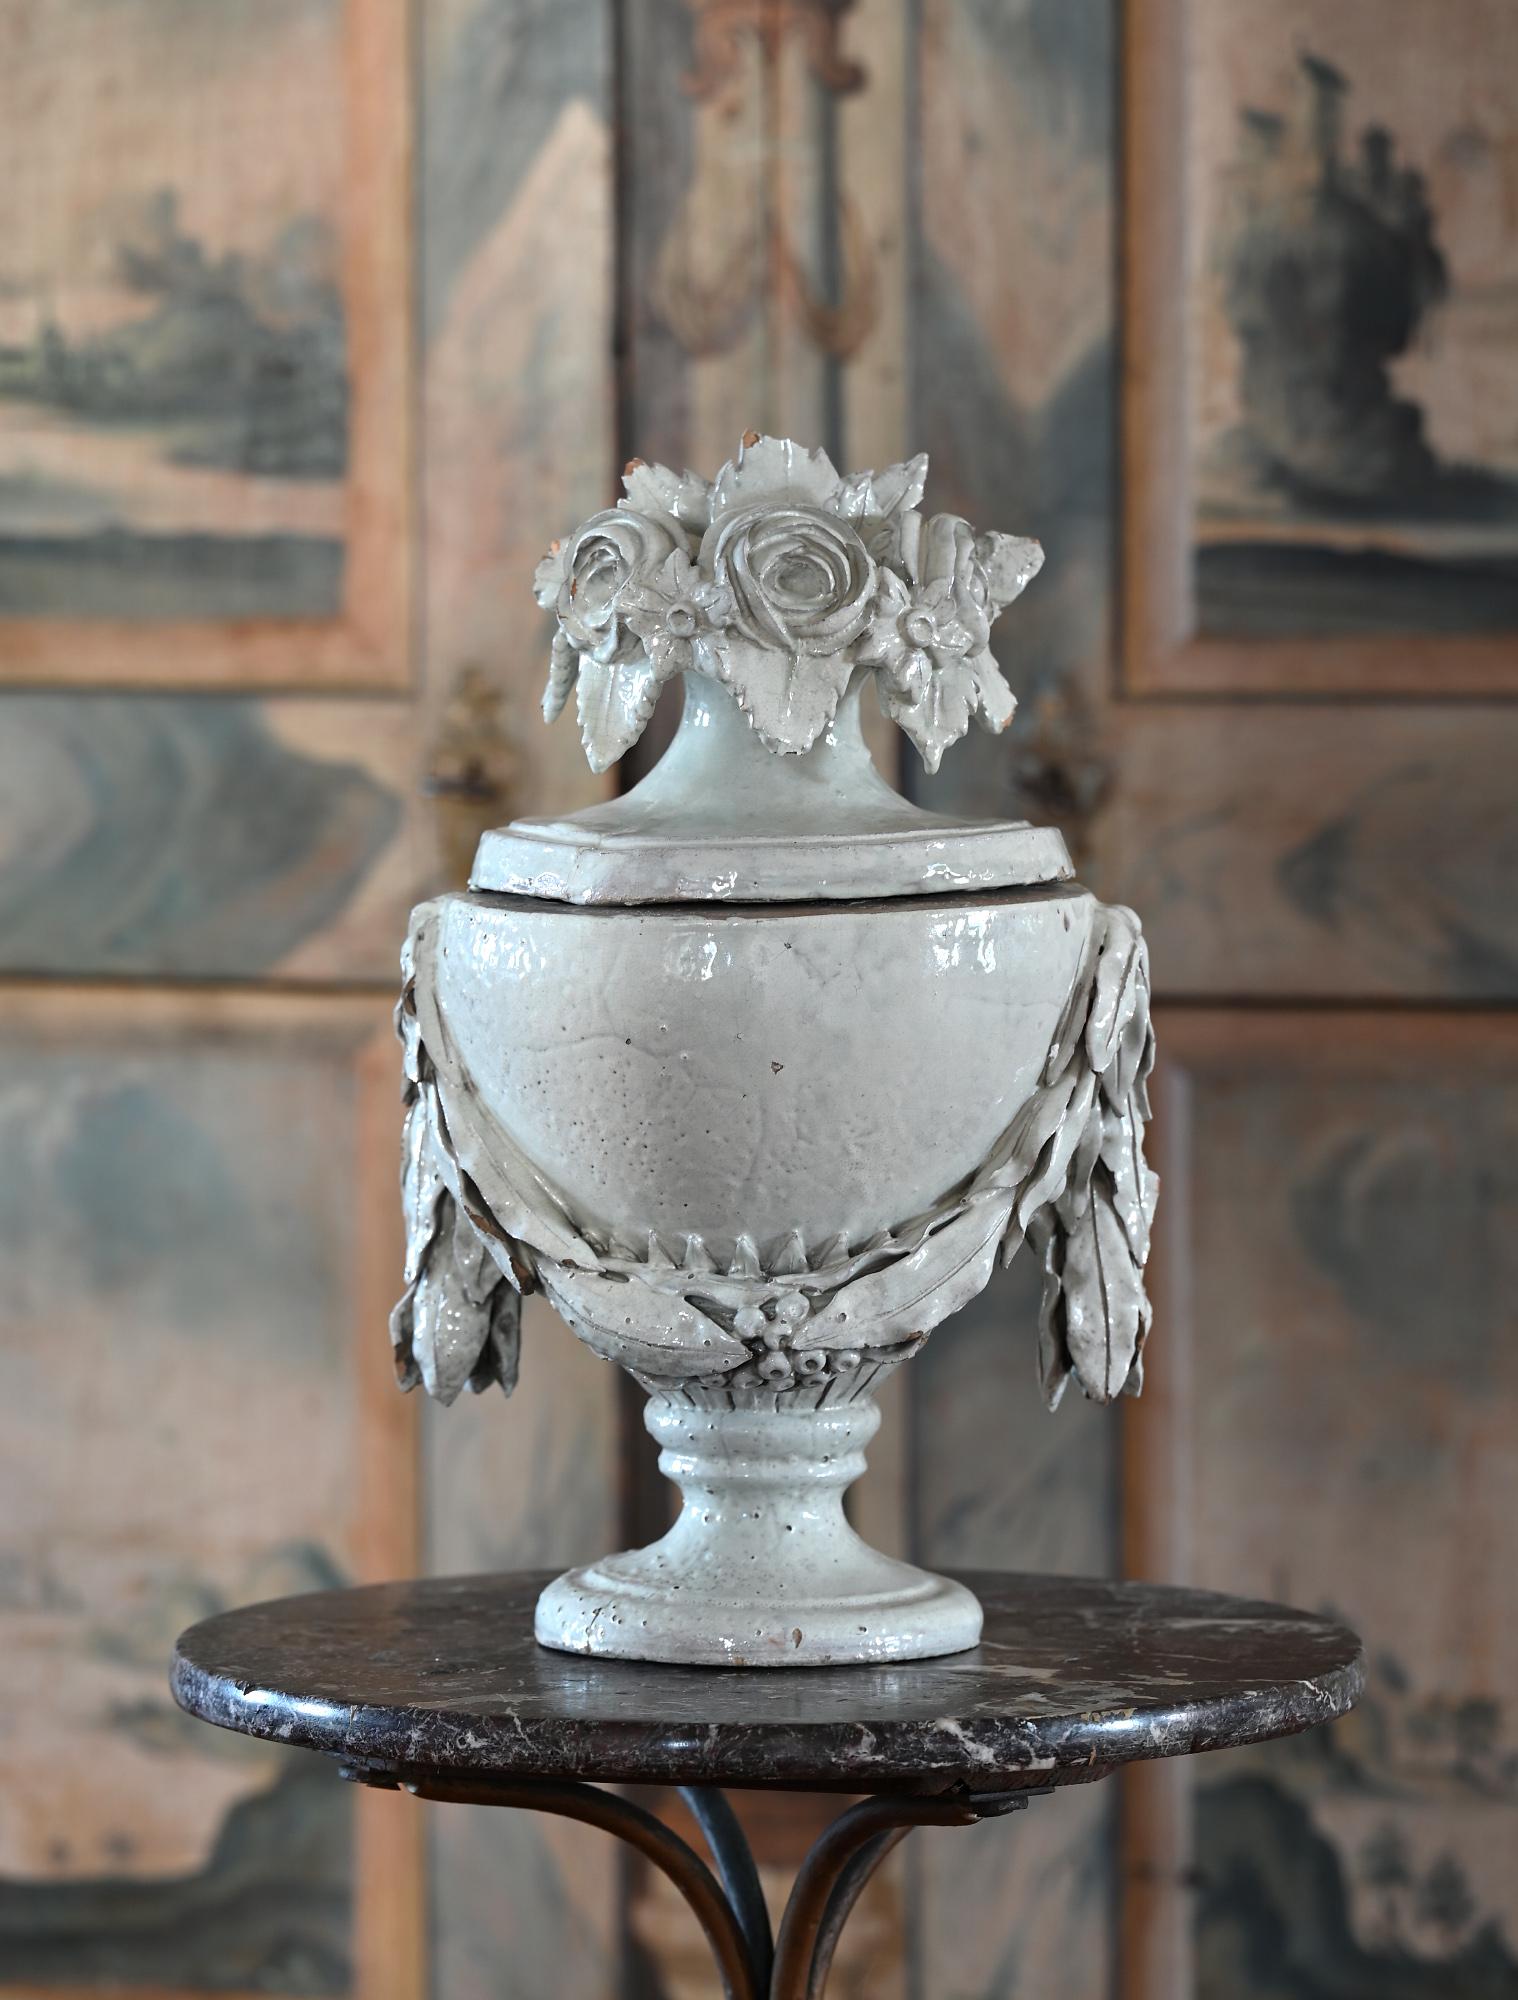 Besondere Fayence-Vase mit Deckel, deutsch, um 1780.
Die seltene Vase ist weiß glasiert und sehr schön geformt.
Die Deckelvase ist ein sehr dekoratives Objekt.